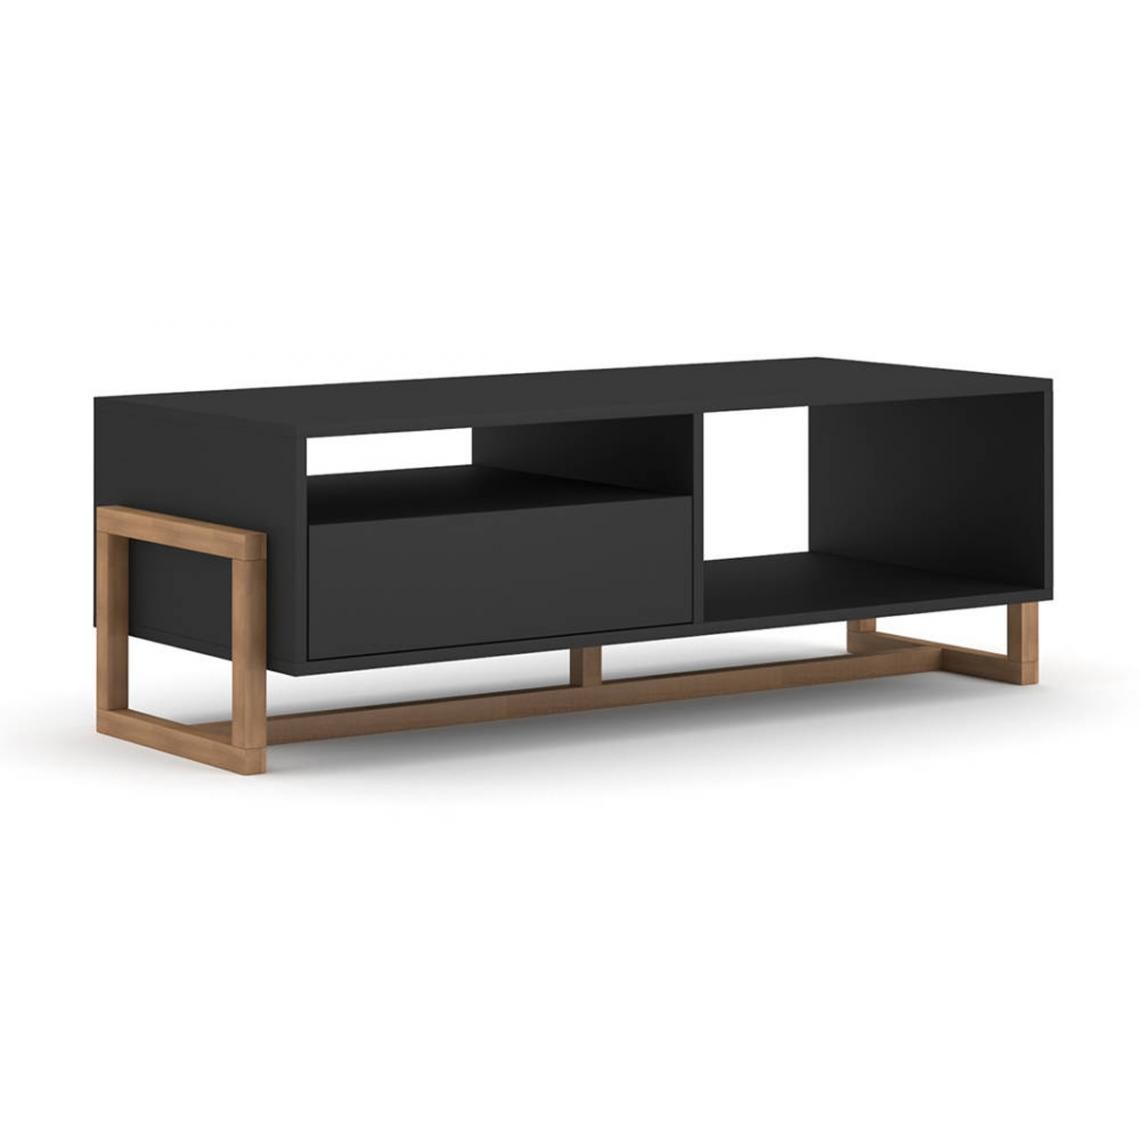 Pegane - Table basse coloris noir mat - Longueur 119 x Profondeur 50 x Hauteur 41 cm - Tables basses